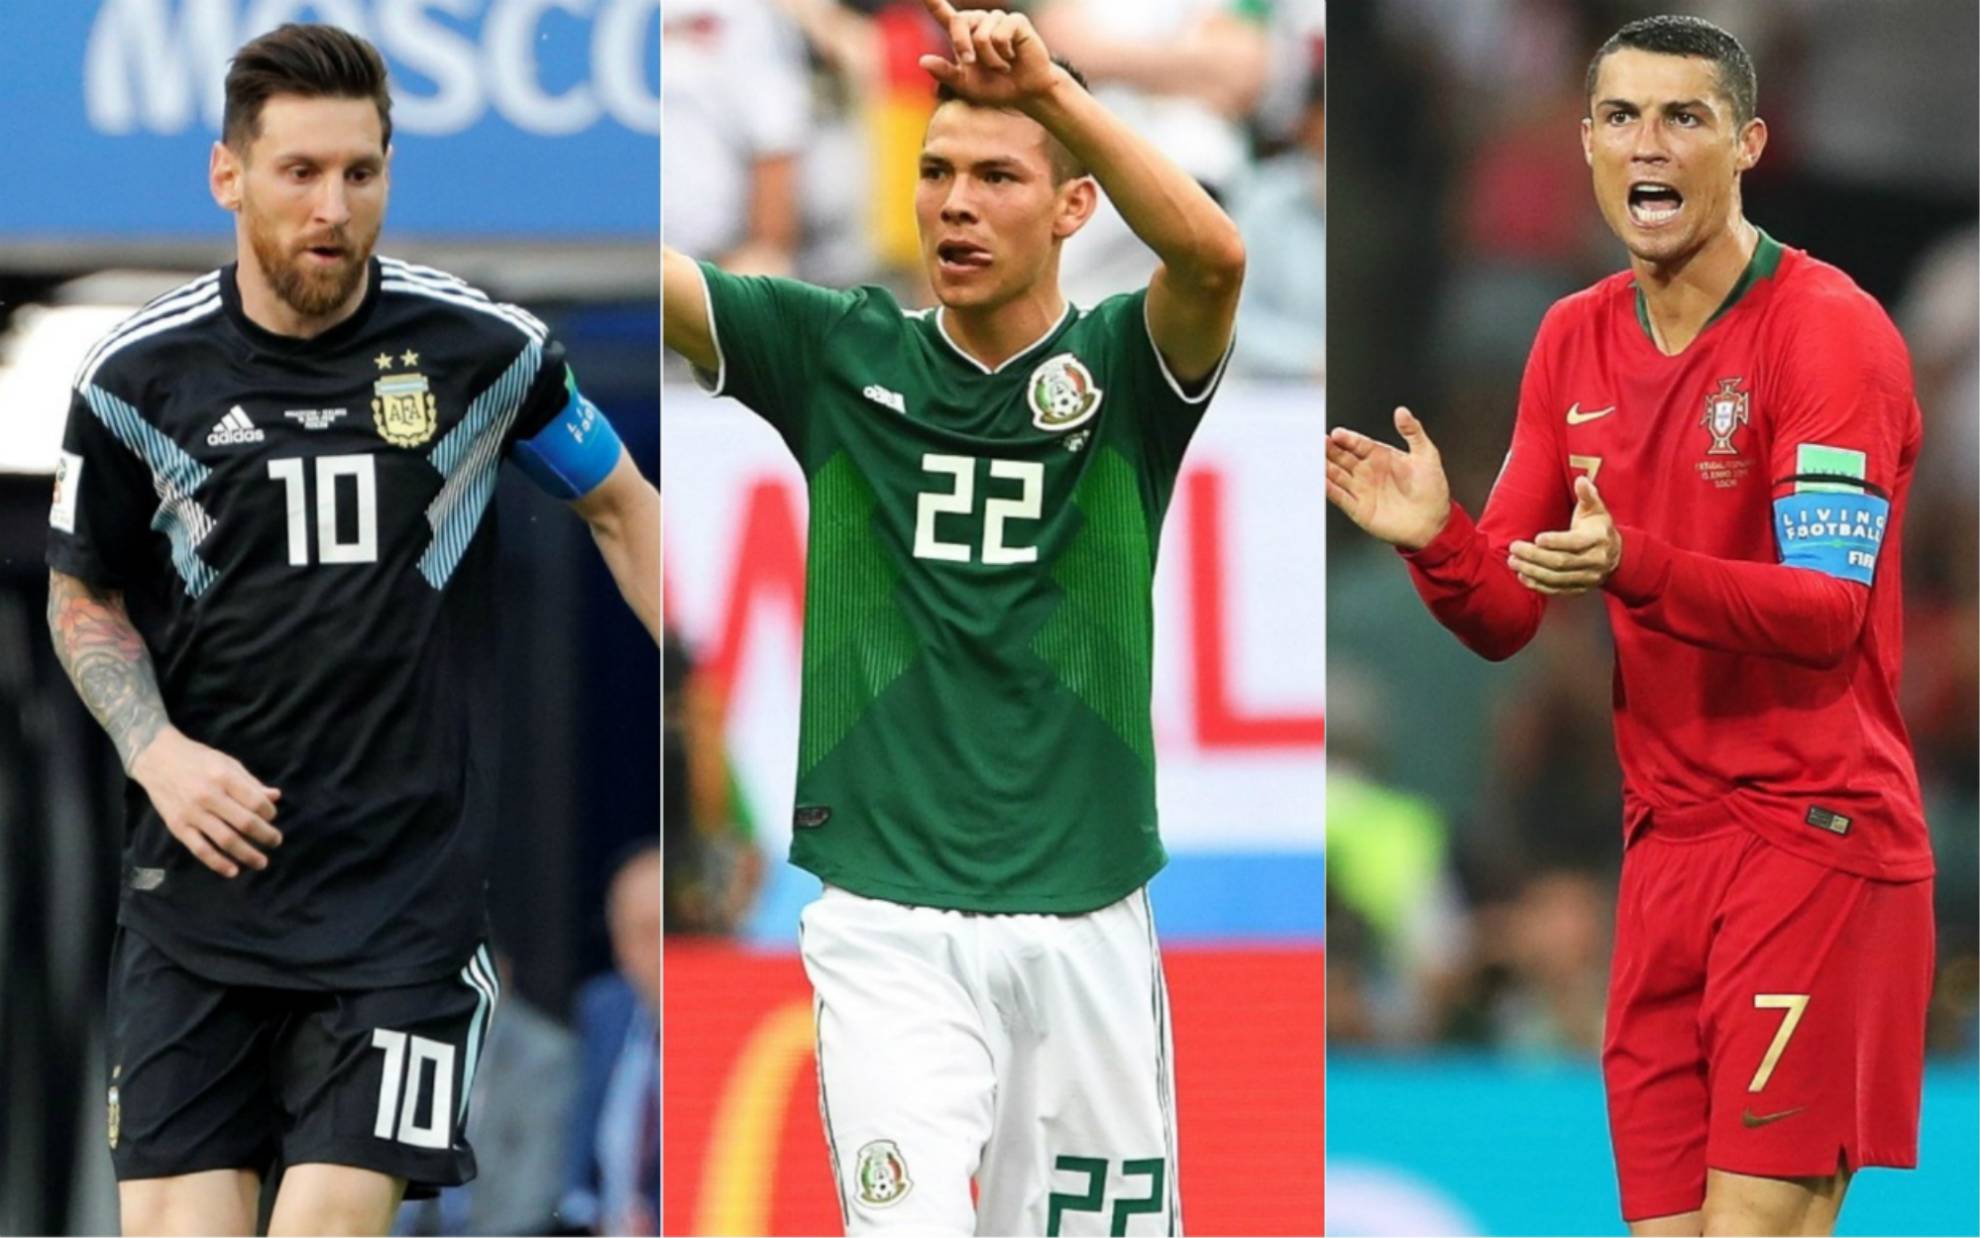 Destacados, decepciones y sorpresas de la jornada 1 del Mundial